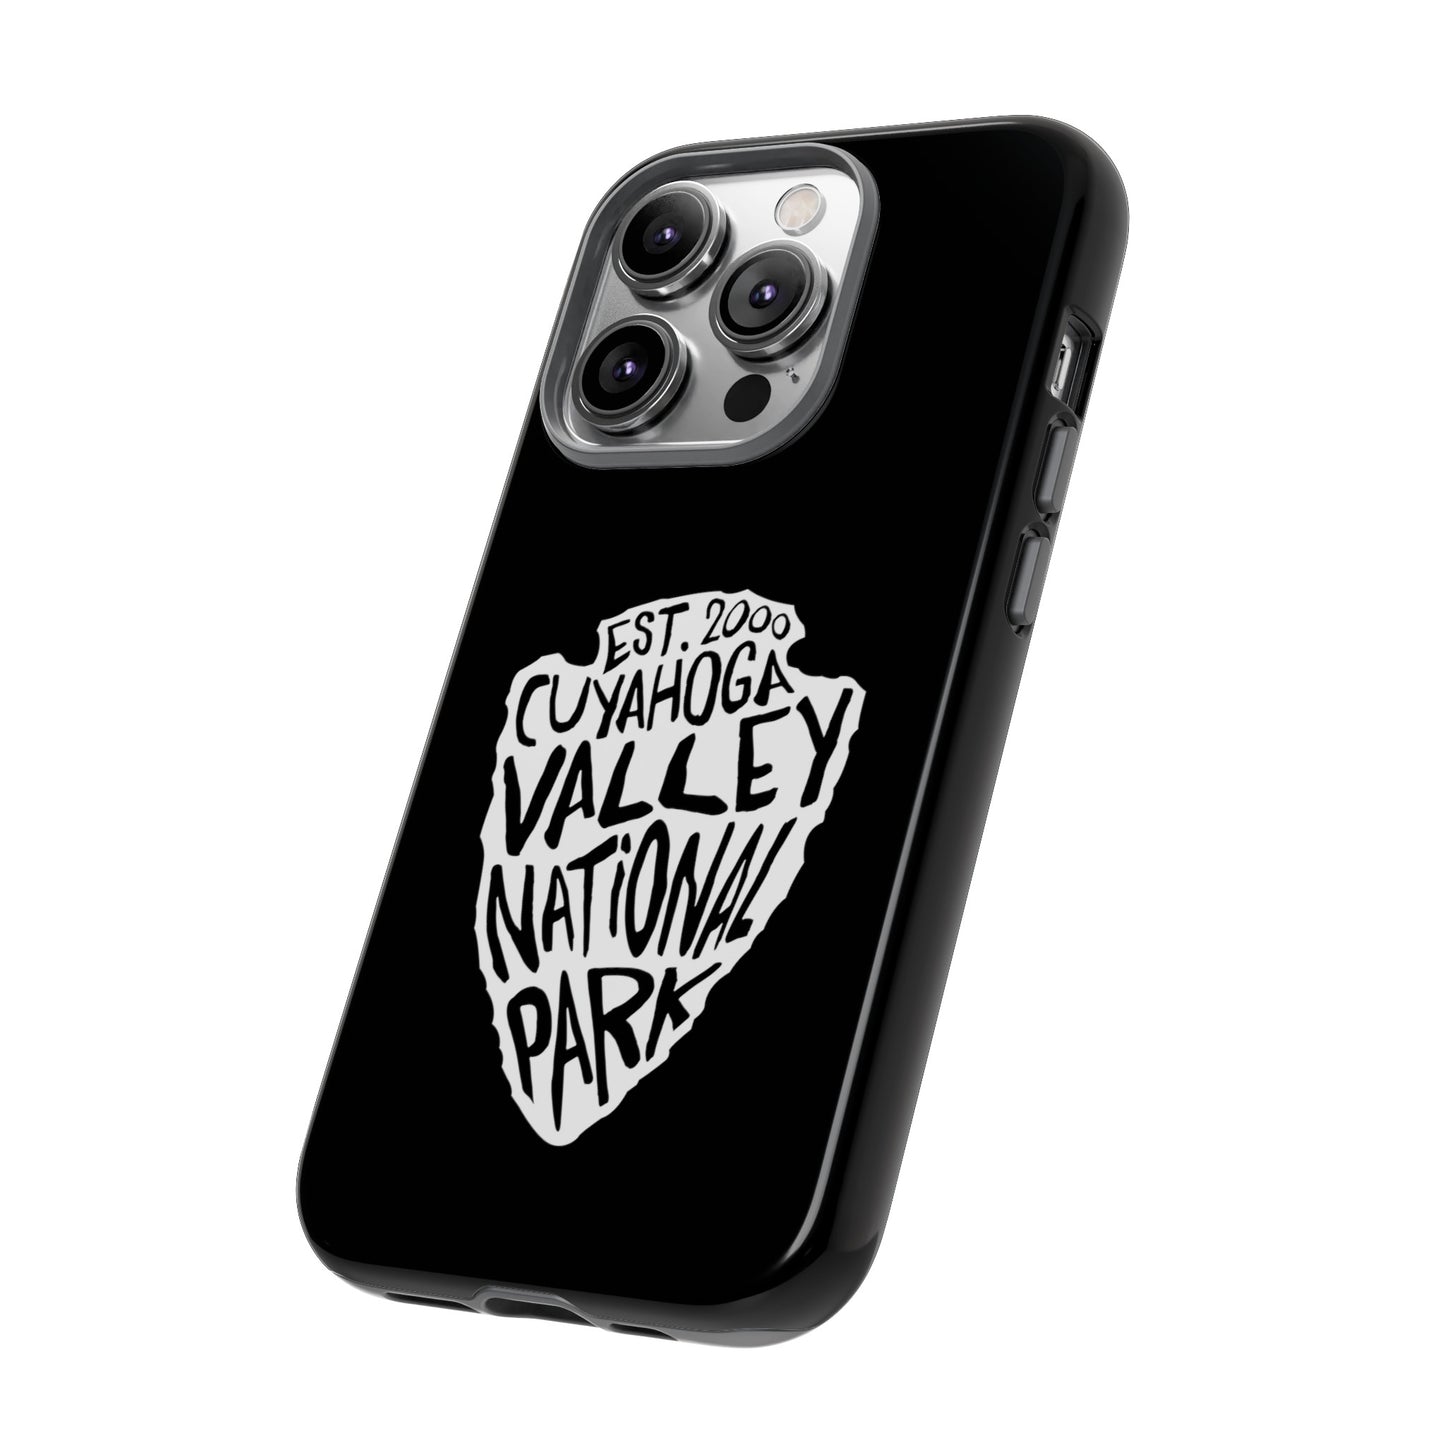 Cuyahoga Valley National Park Phone Case - Arrowhead Design